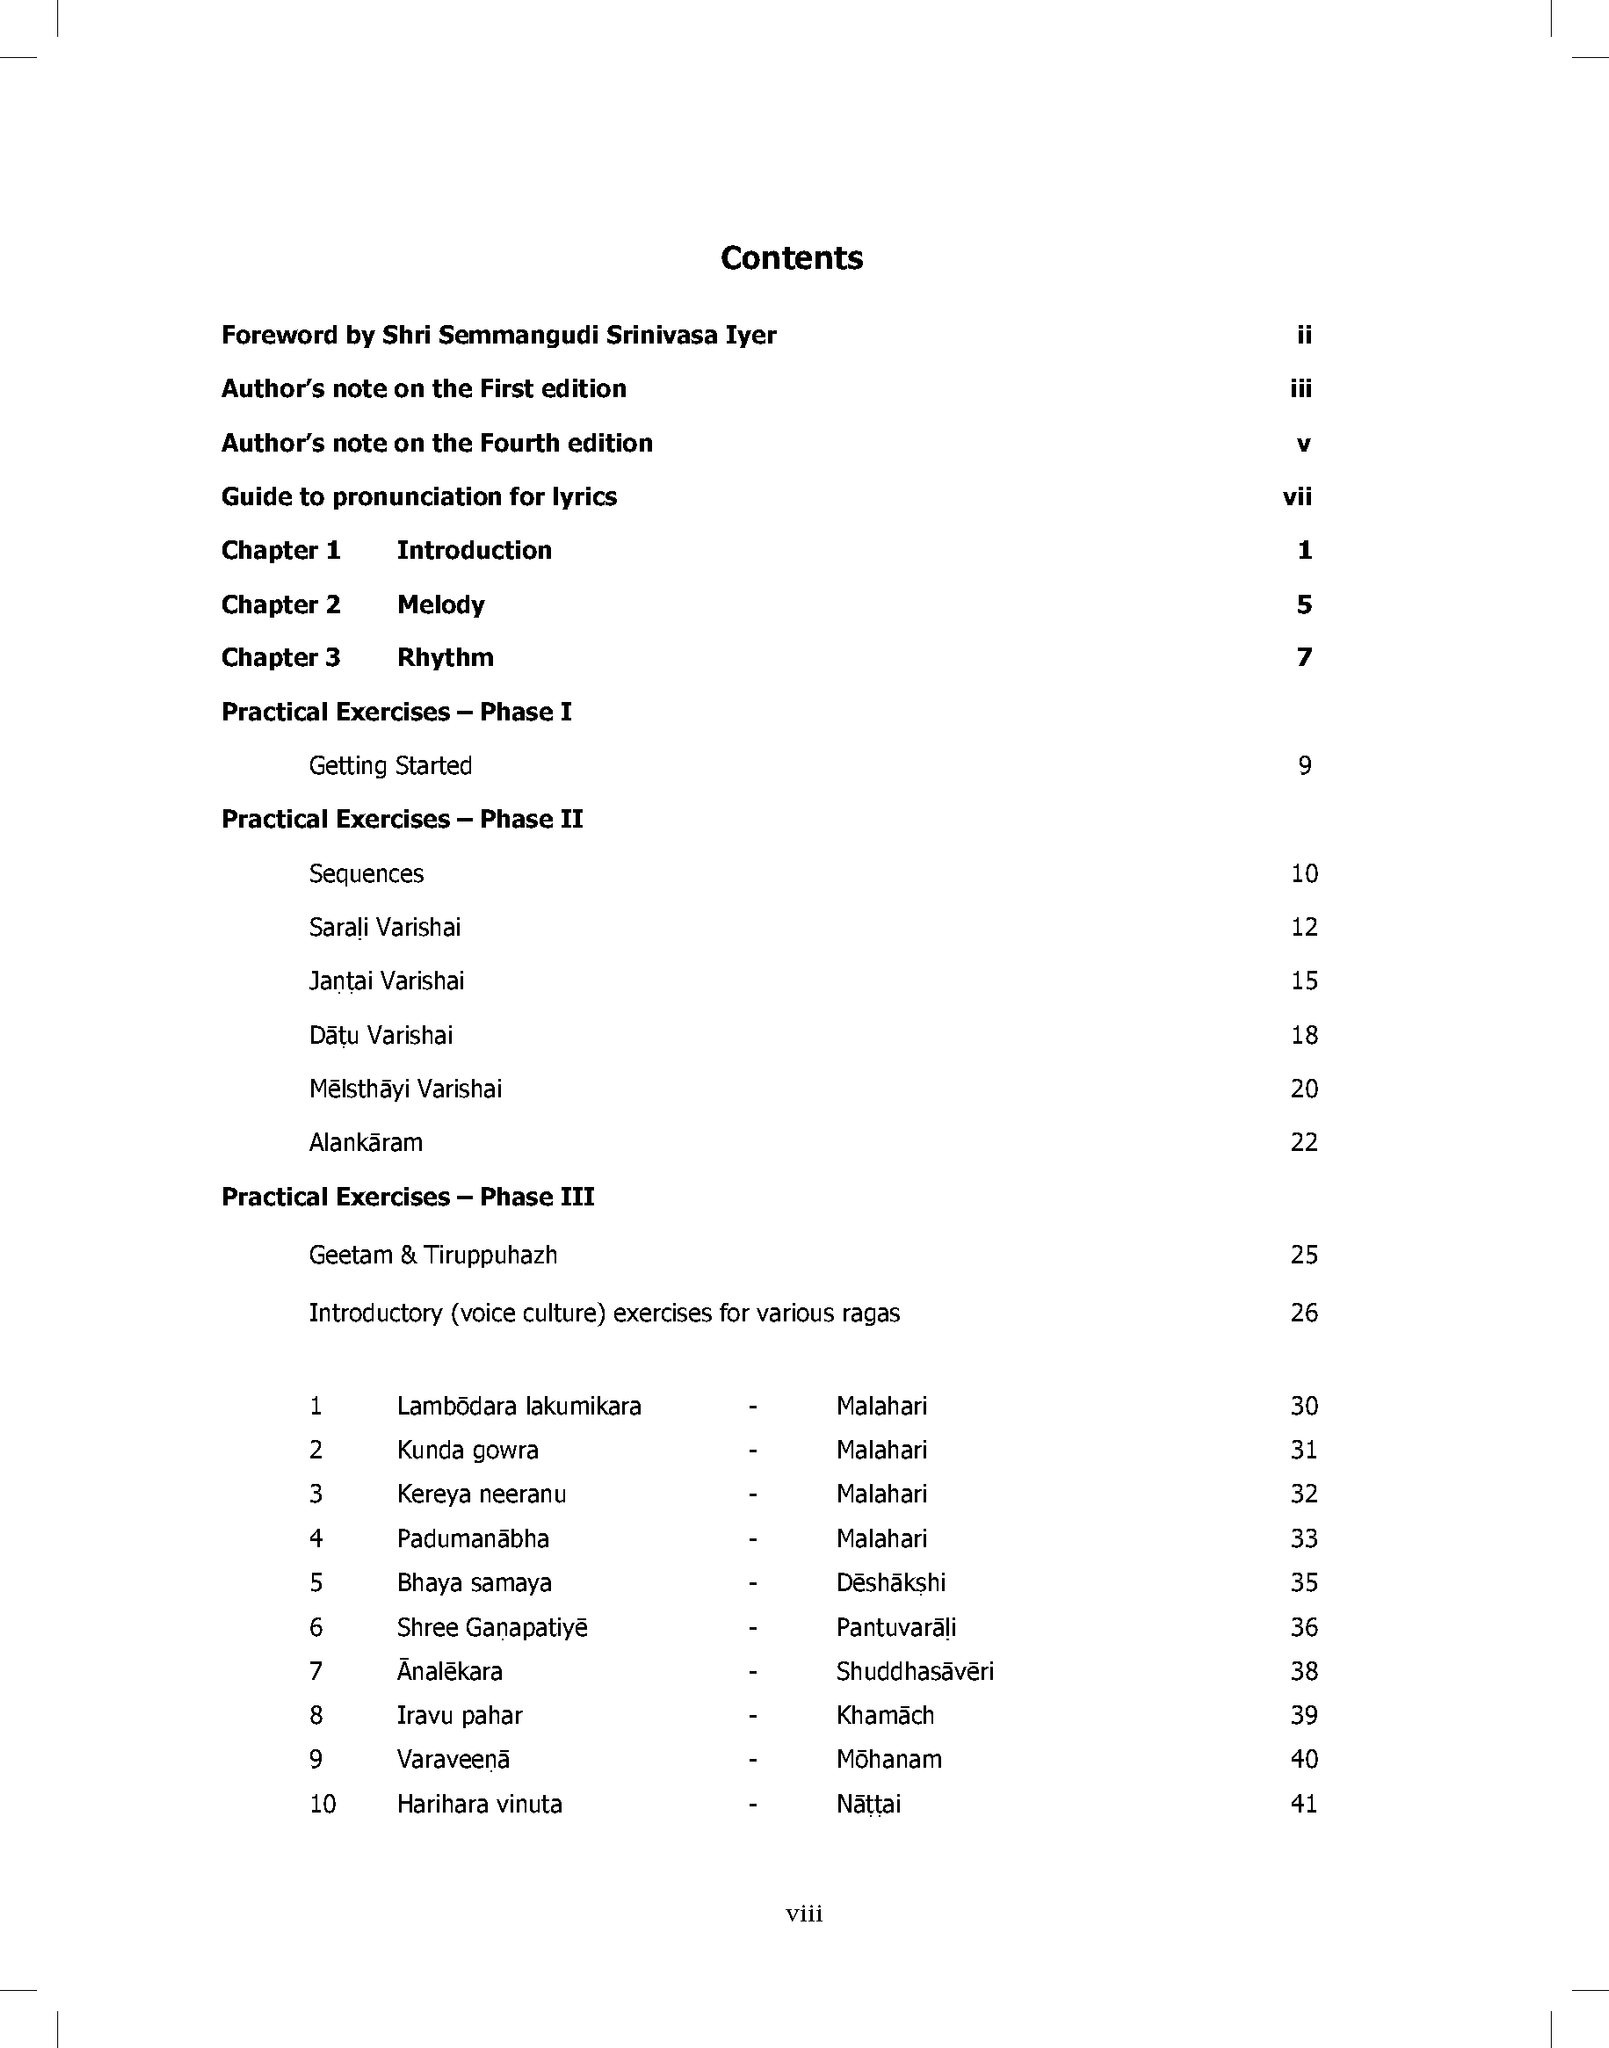 carnatic music books pdf